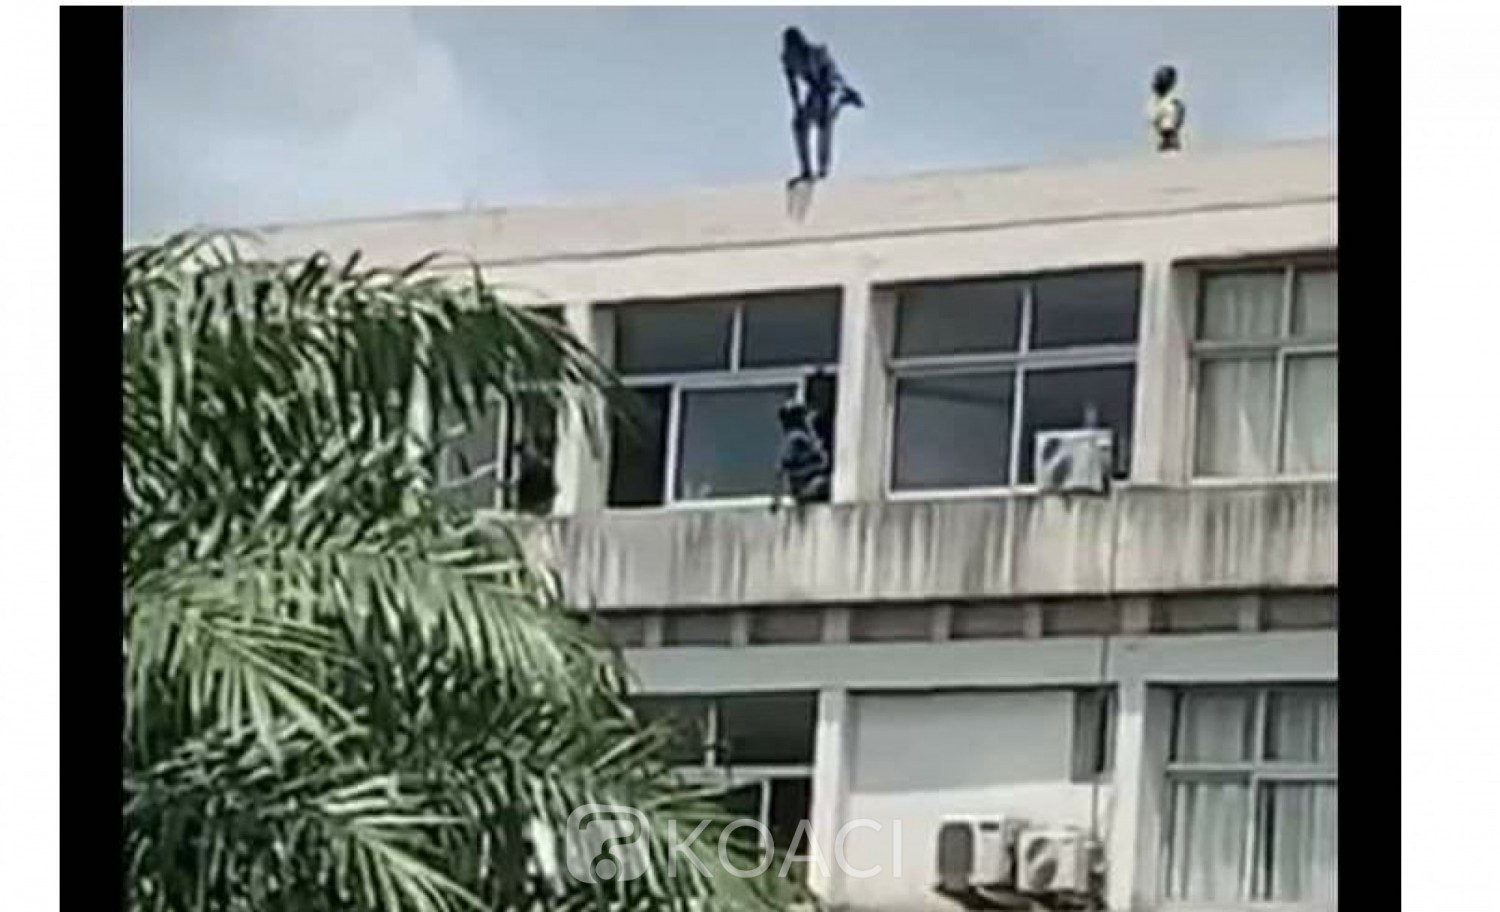 Côte d'Ivoire: Au campus de Cocody, poussé par une envie de se suicider, un étudiant sauvé in extremis par ses amis